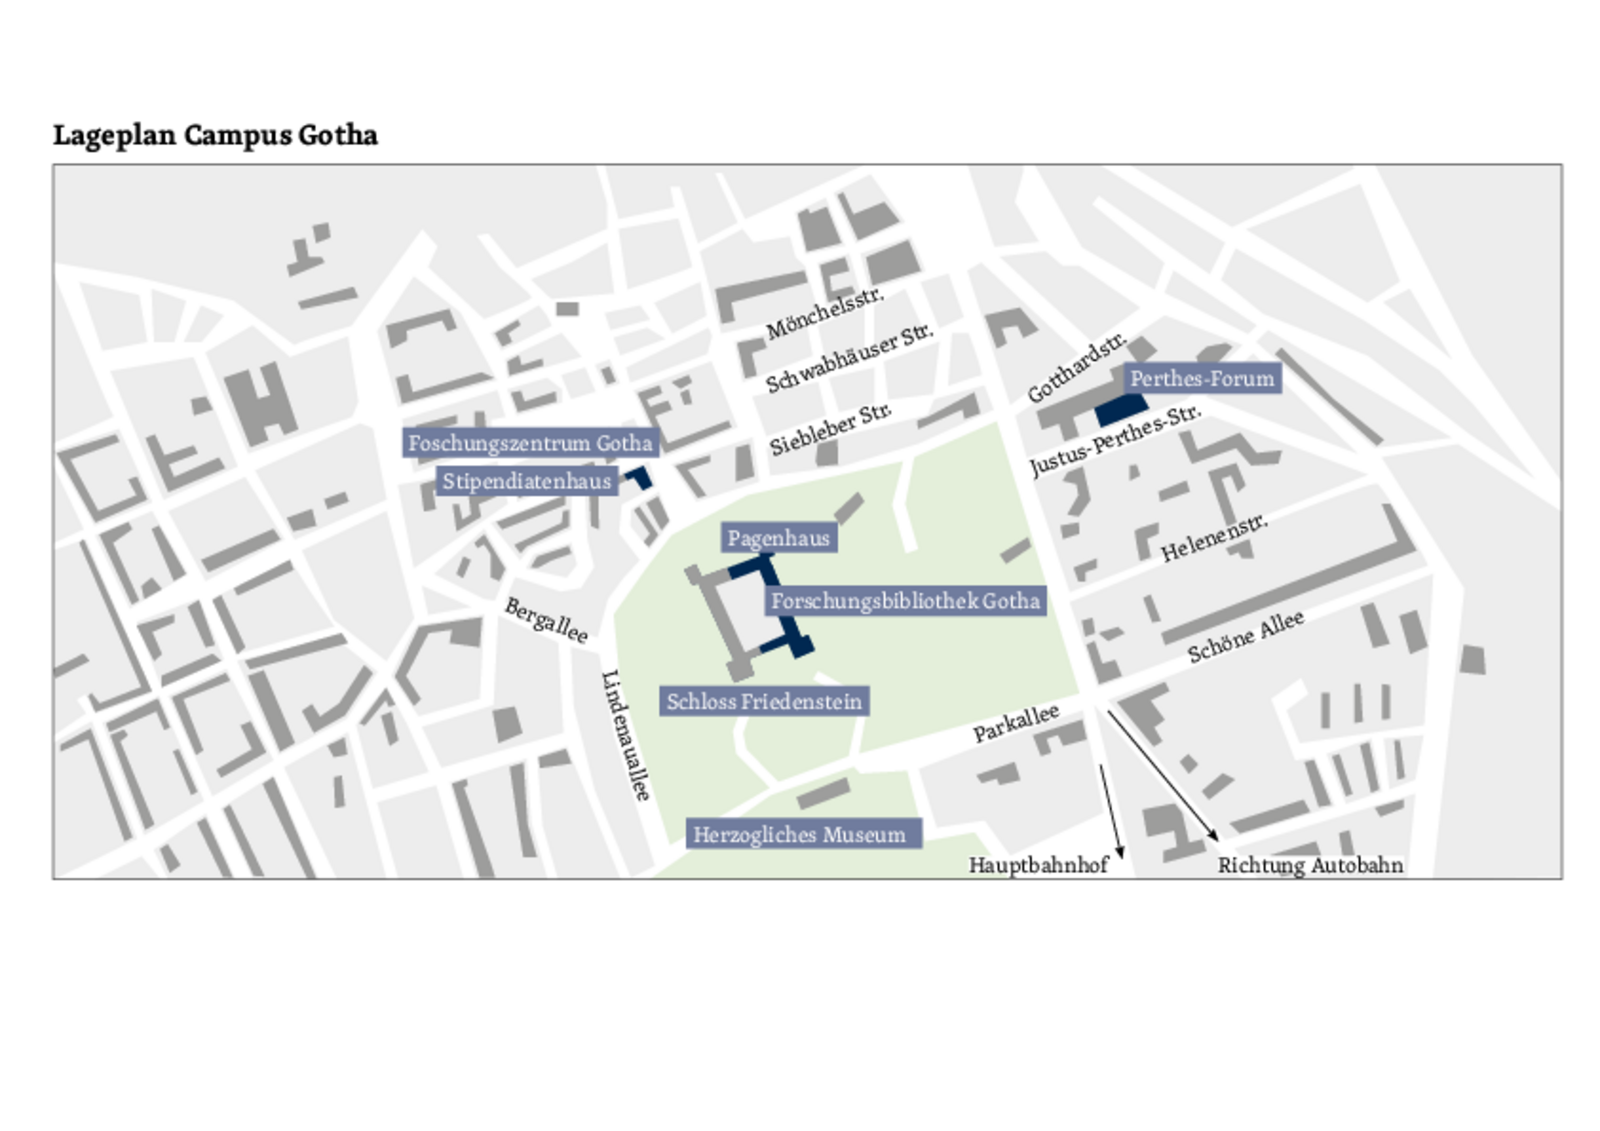 Lageplan des Forschungszentrums Gotha